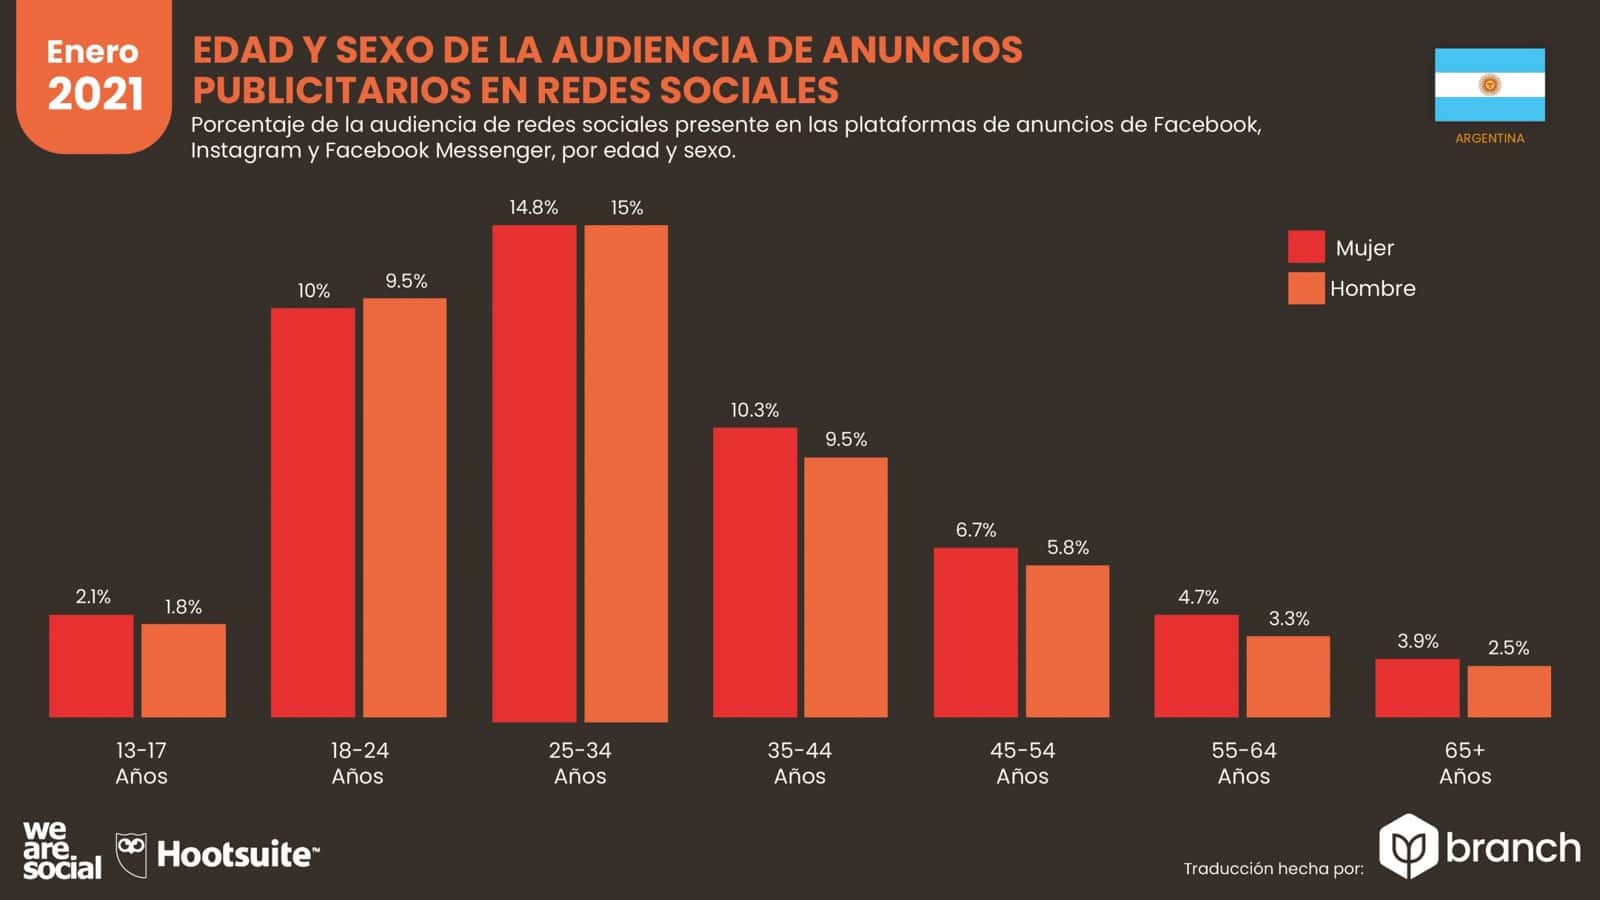 grafico-edad-y-sexo-de-la-audiencia-de-anuncios-publicitarios-argentina-2020-2021